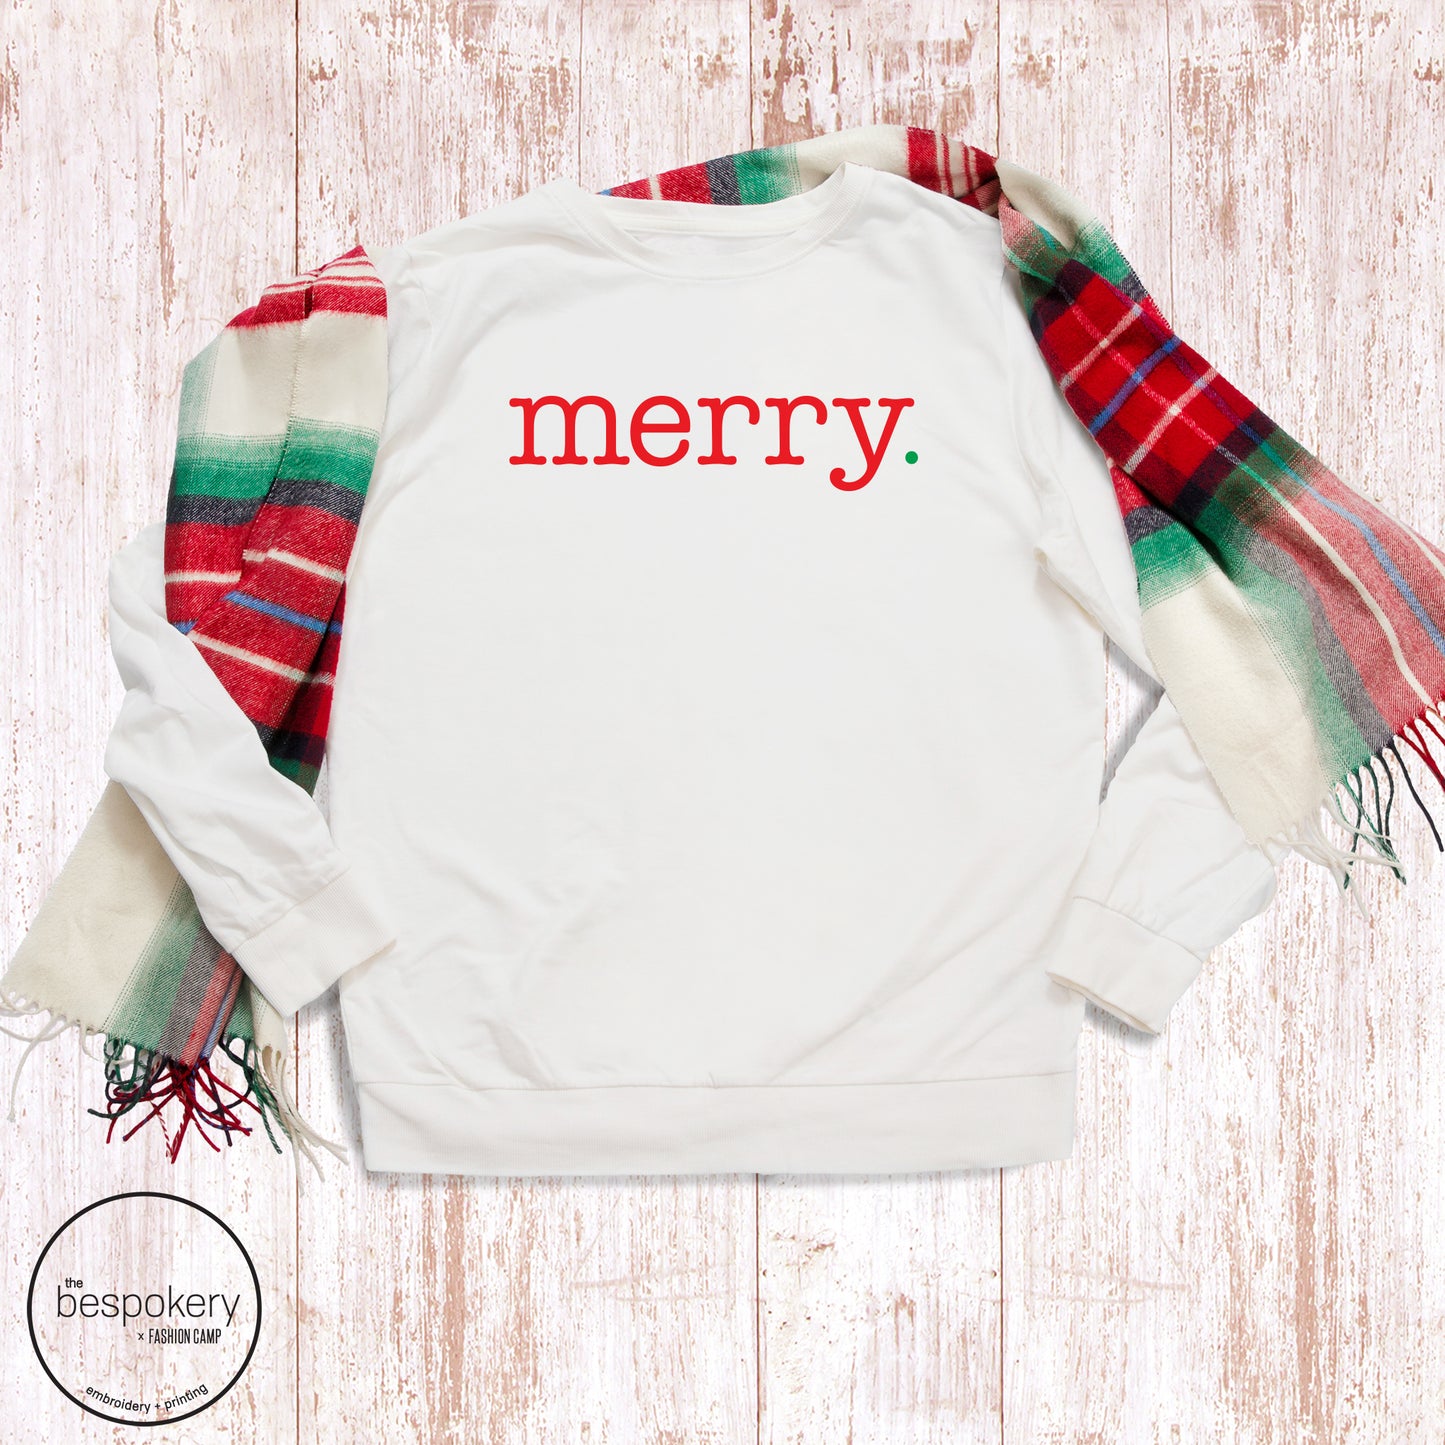 "Merry." - White Sweatshirt